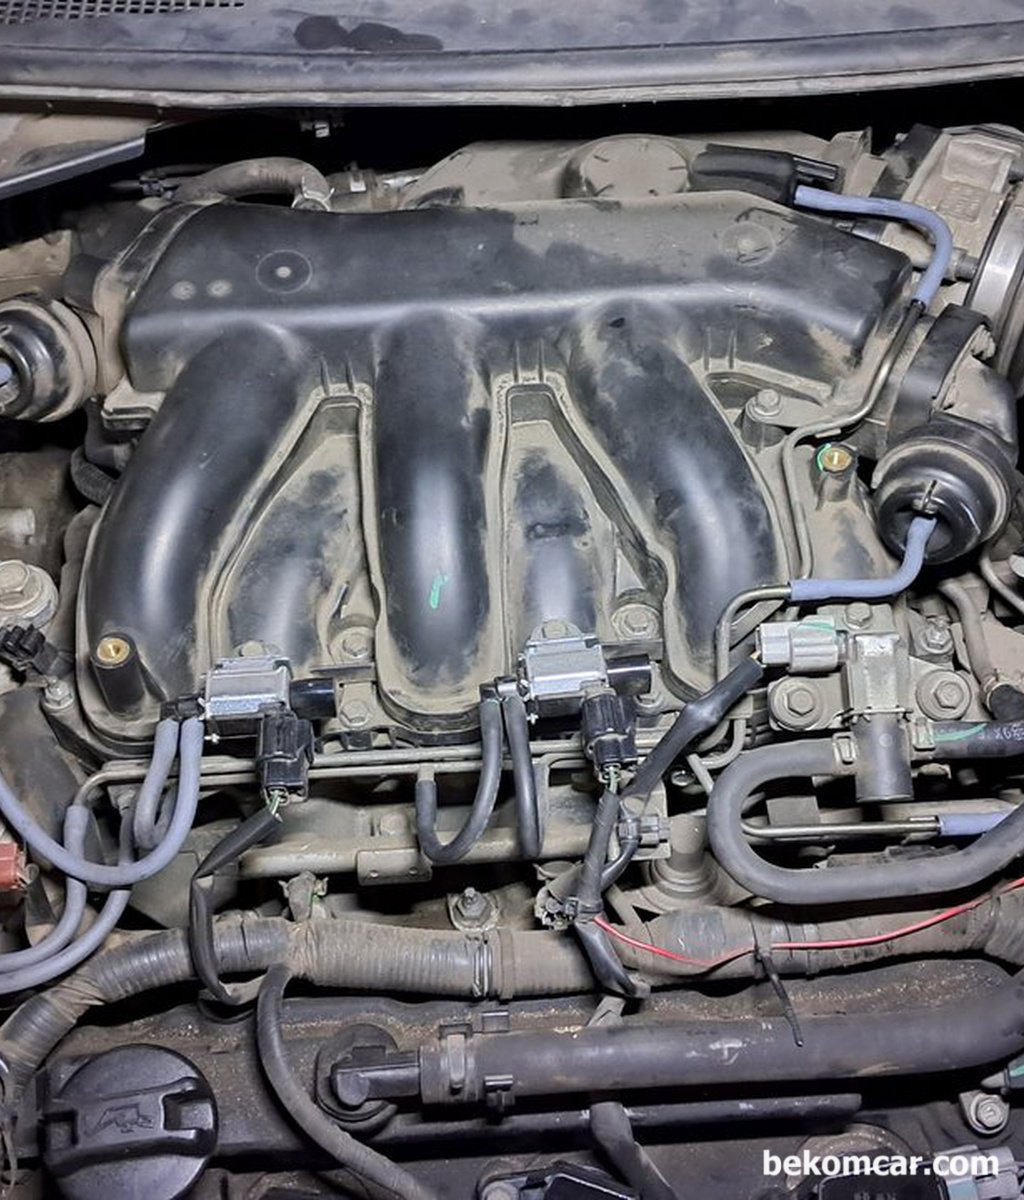 닛산 알티마 V6 L32 엔진의 점화코일 교체하기전에 고장인지 어떻게 측정이 가능하나요?|bekomcar.com